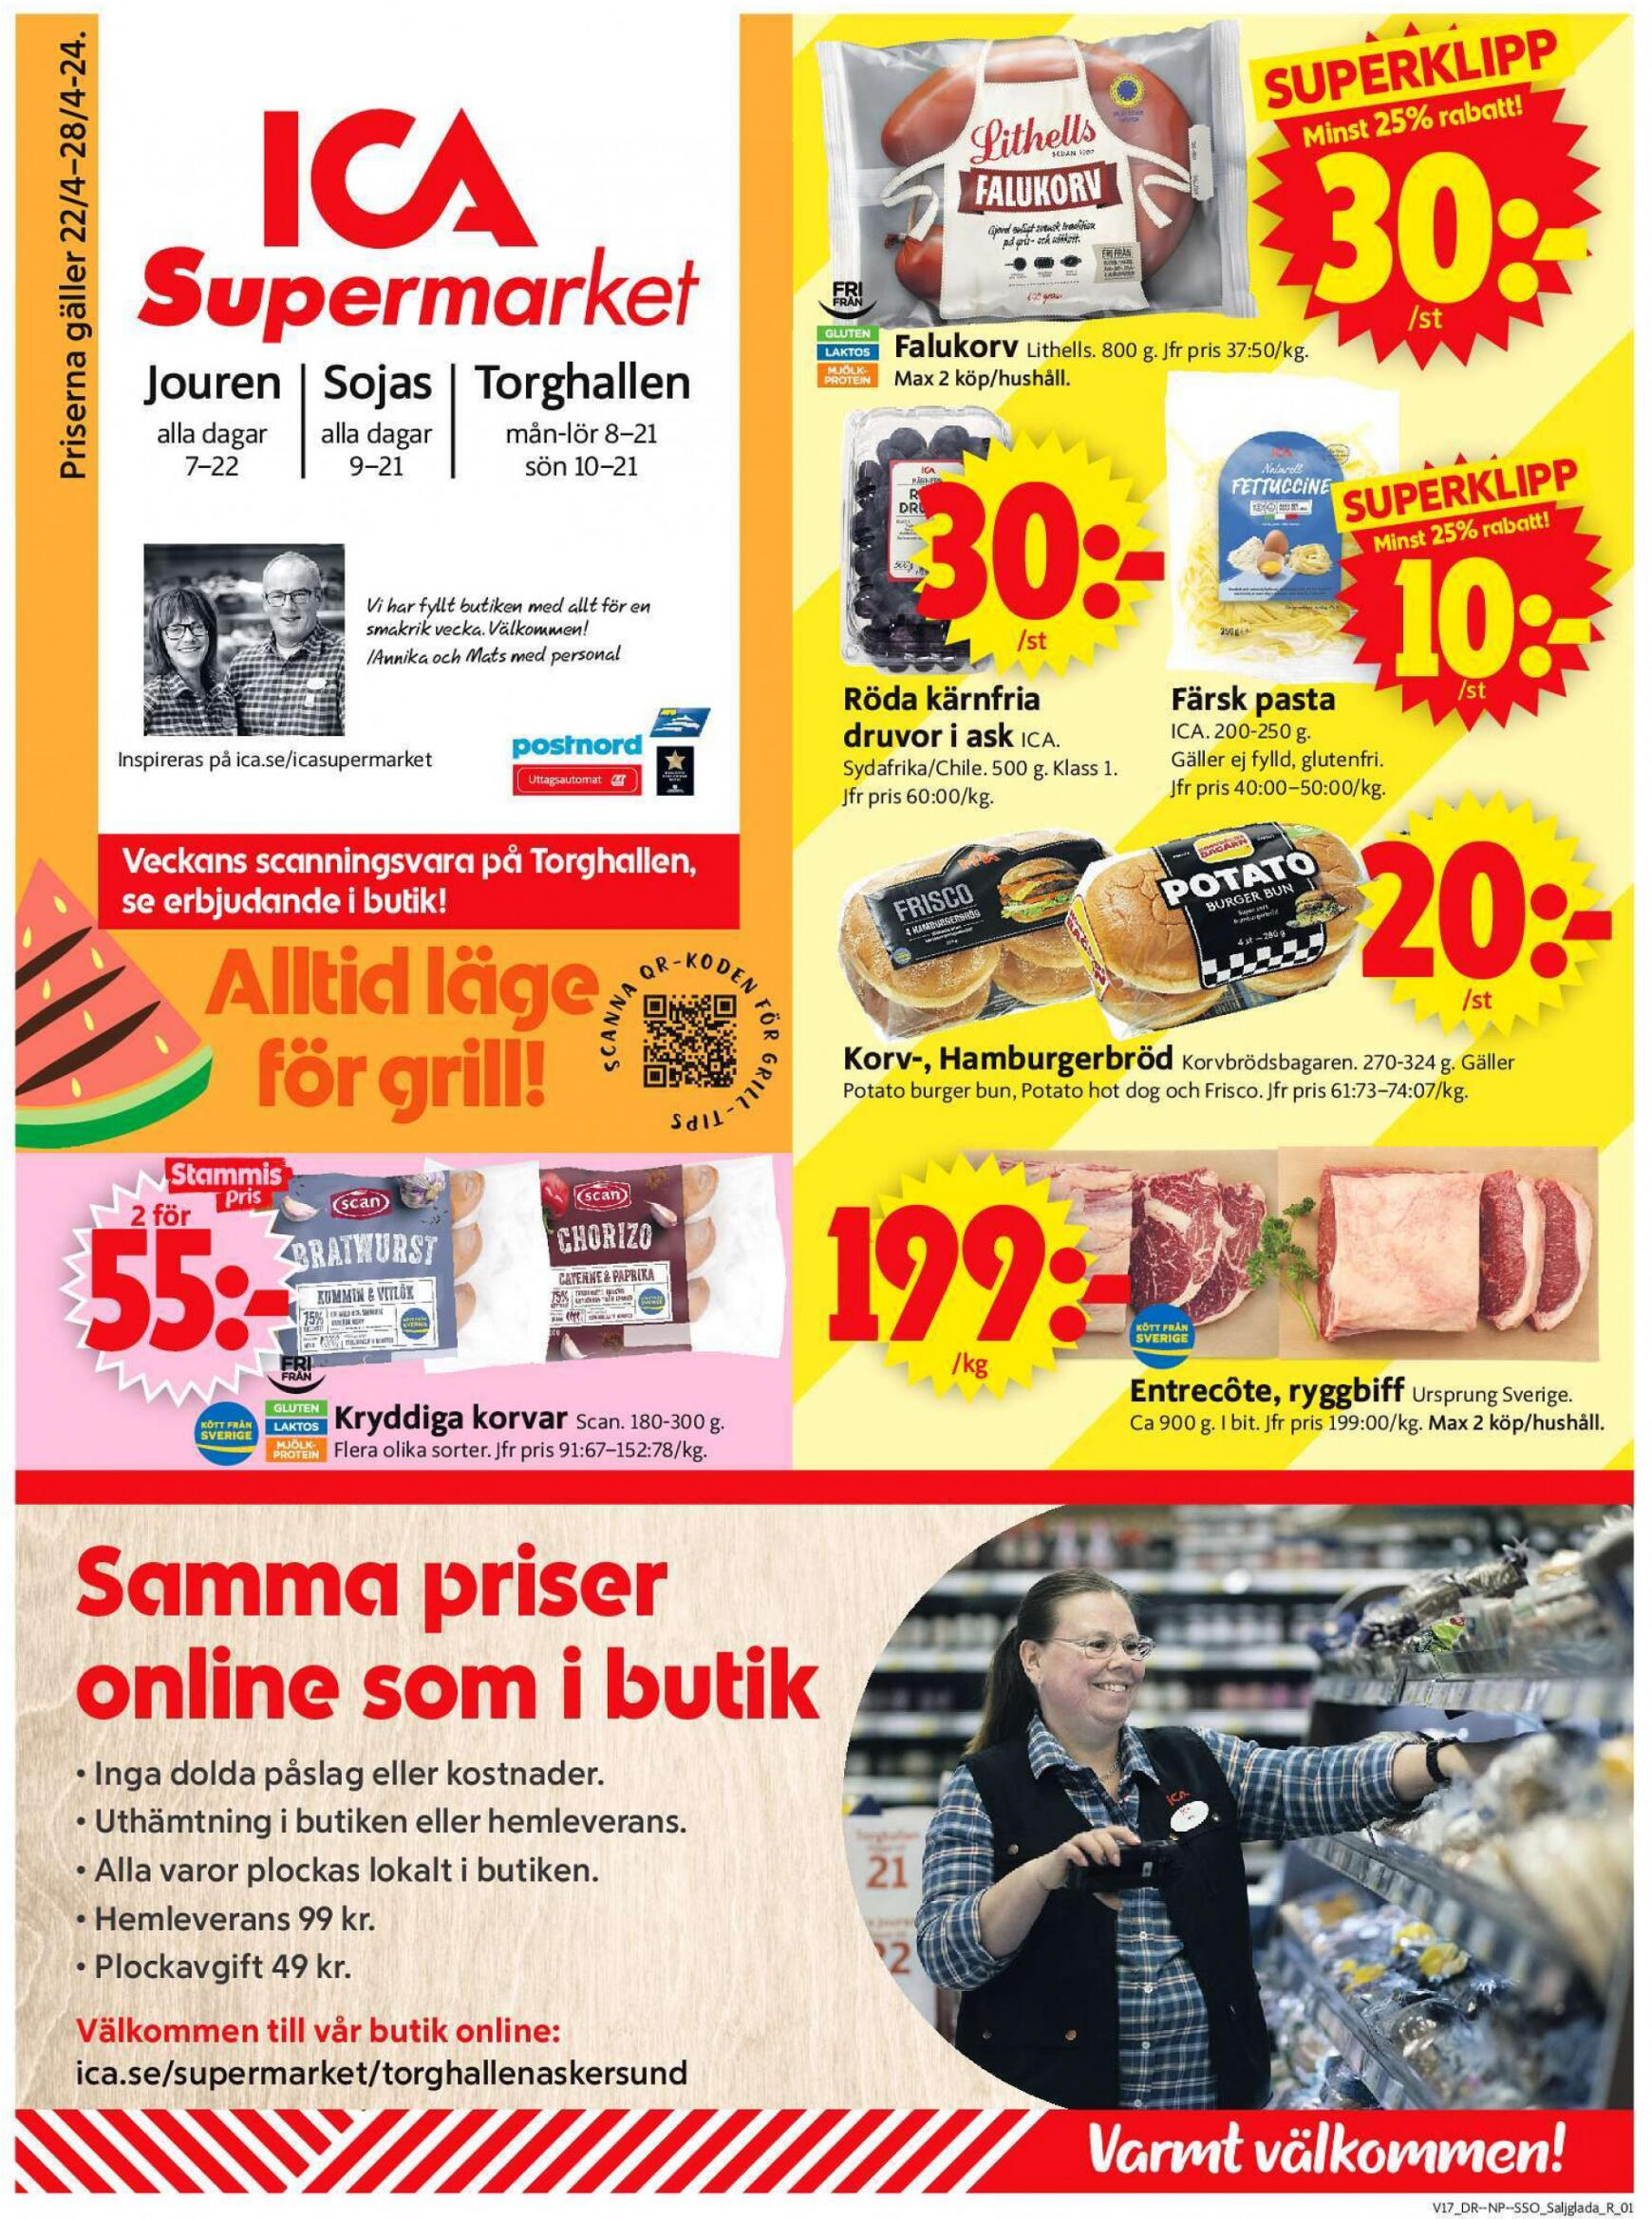 ica-supermarket - Flyer ICA Supermarket current 22.04. - 28.04.